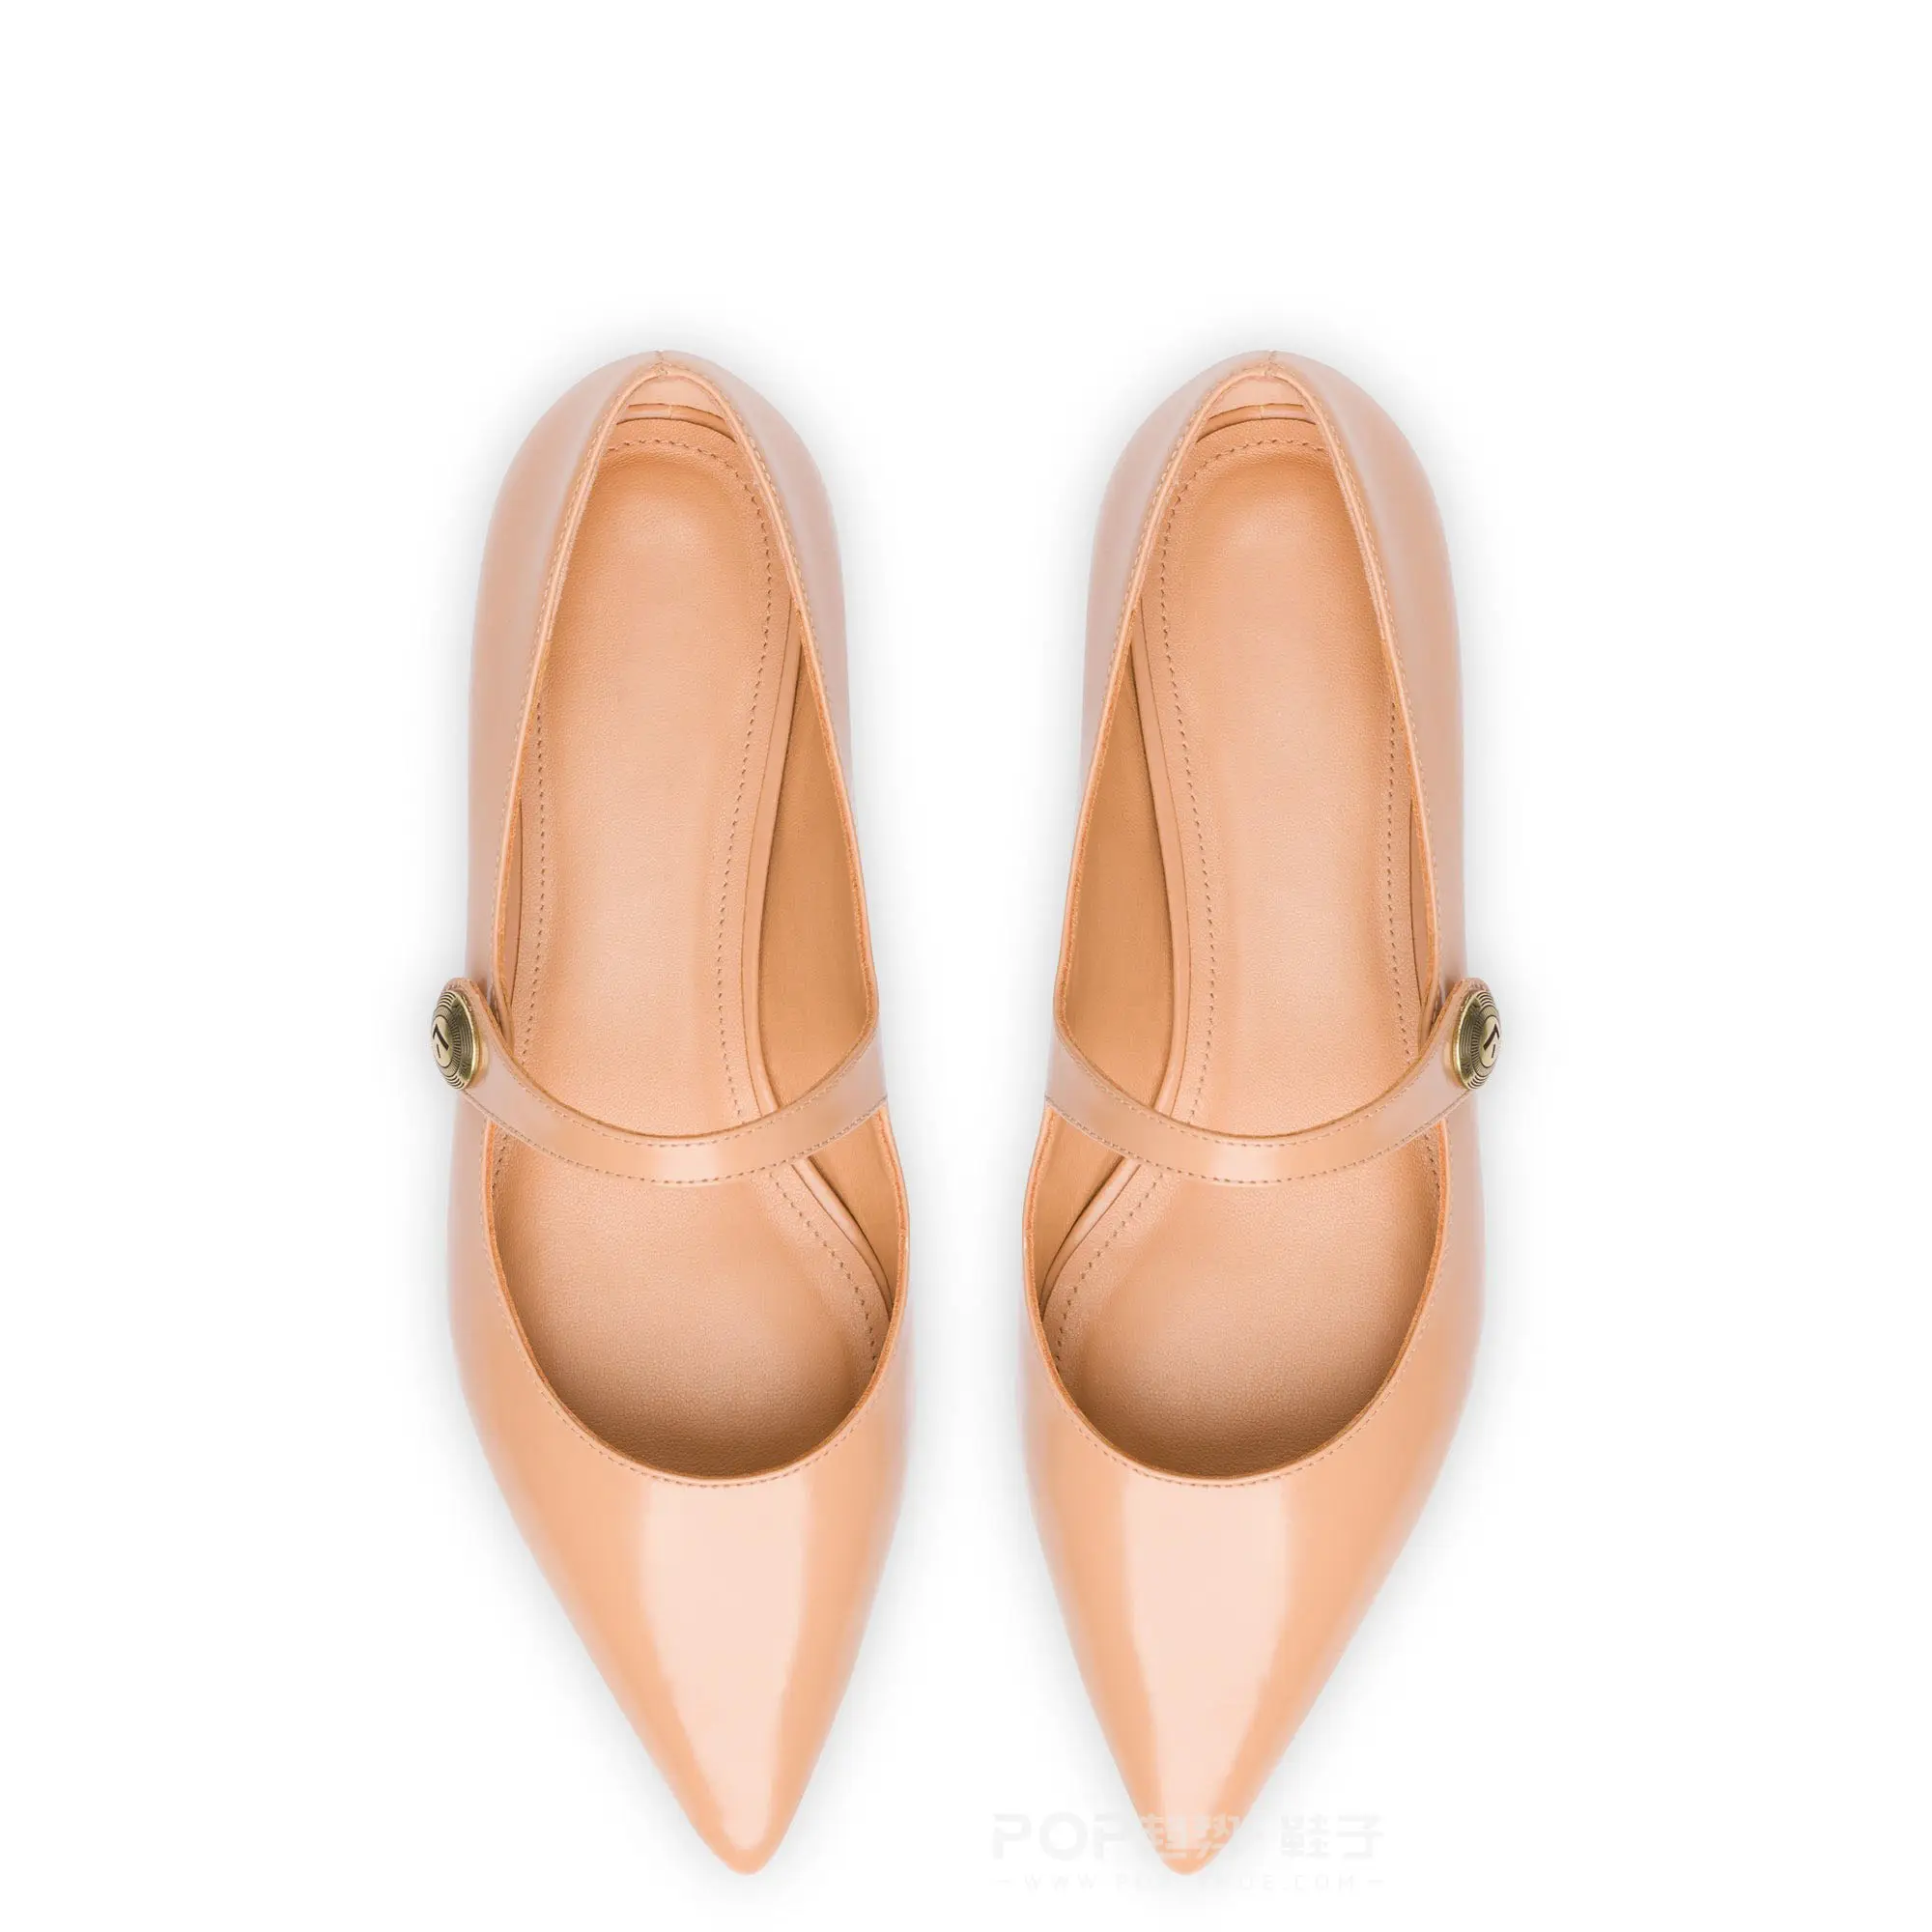 Индивидуальный дизайн, Новая Элегантная женская обувь с острым носком в стиле Мэри Джейн, Высококачественная роскошная кожаная верхняя обувь на плоской подошве